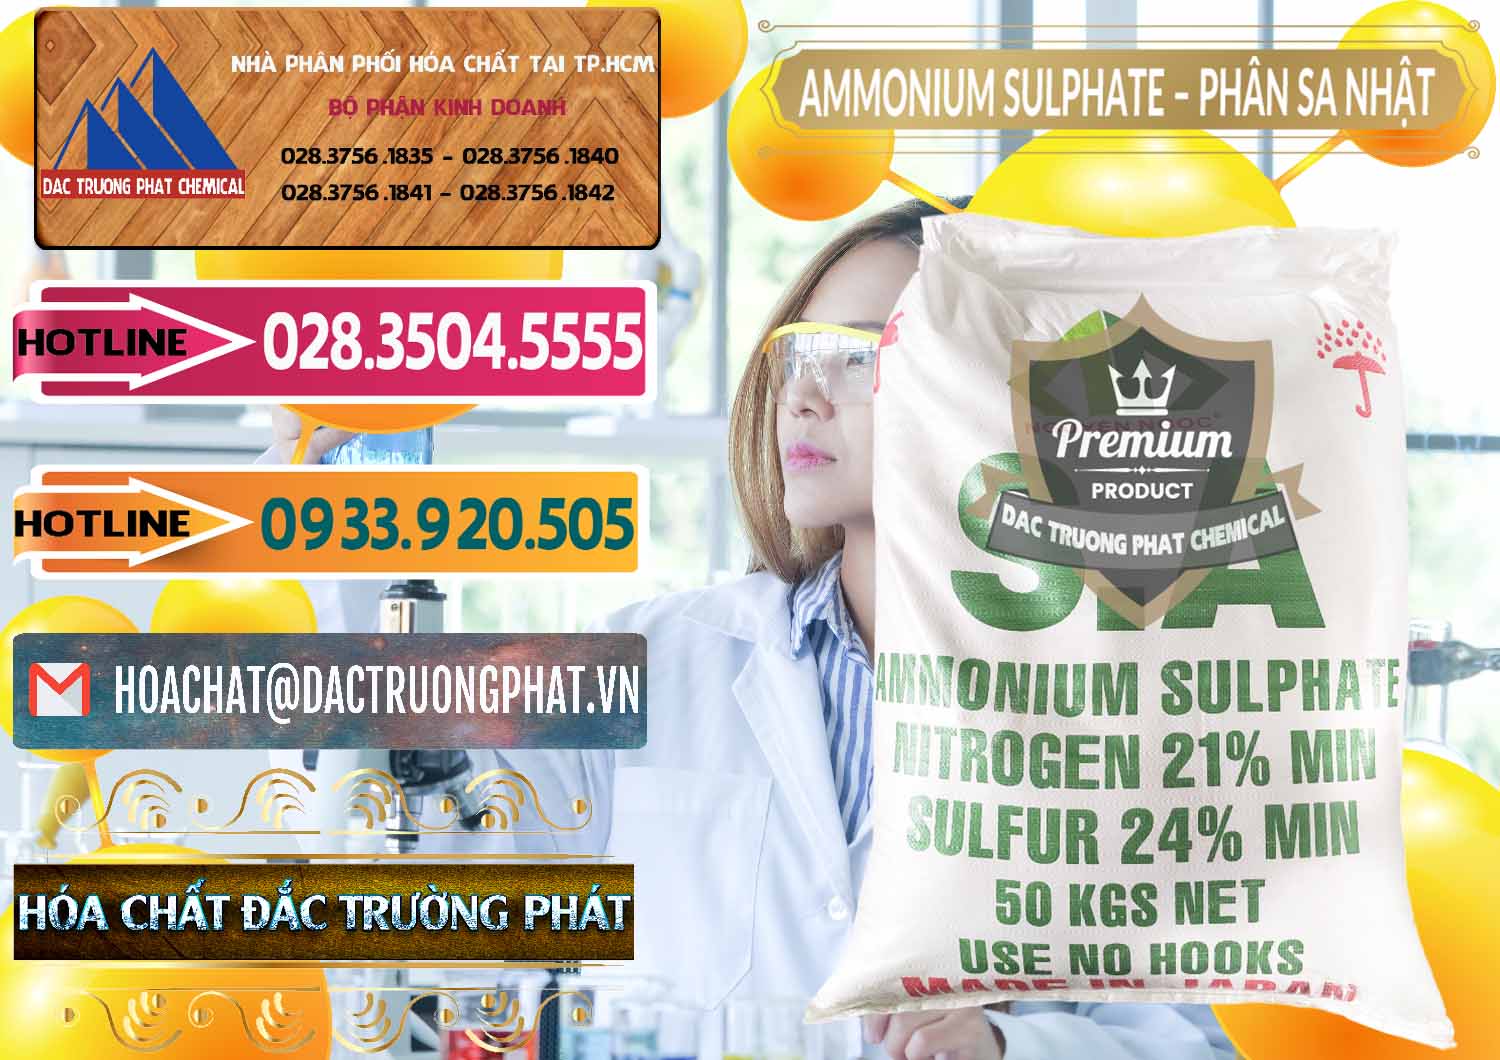 Cty chuyên bán ( cung cấp ) Ammonium Sulphate – Phân Sa Nhật Japan - 0023 - Công ty chuyên cung cấp & nhập khẩu hóa chất tại TP.HCM - dactruongphat.vn